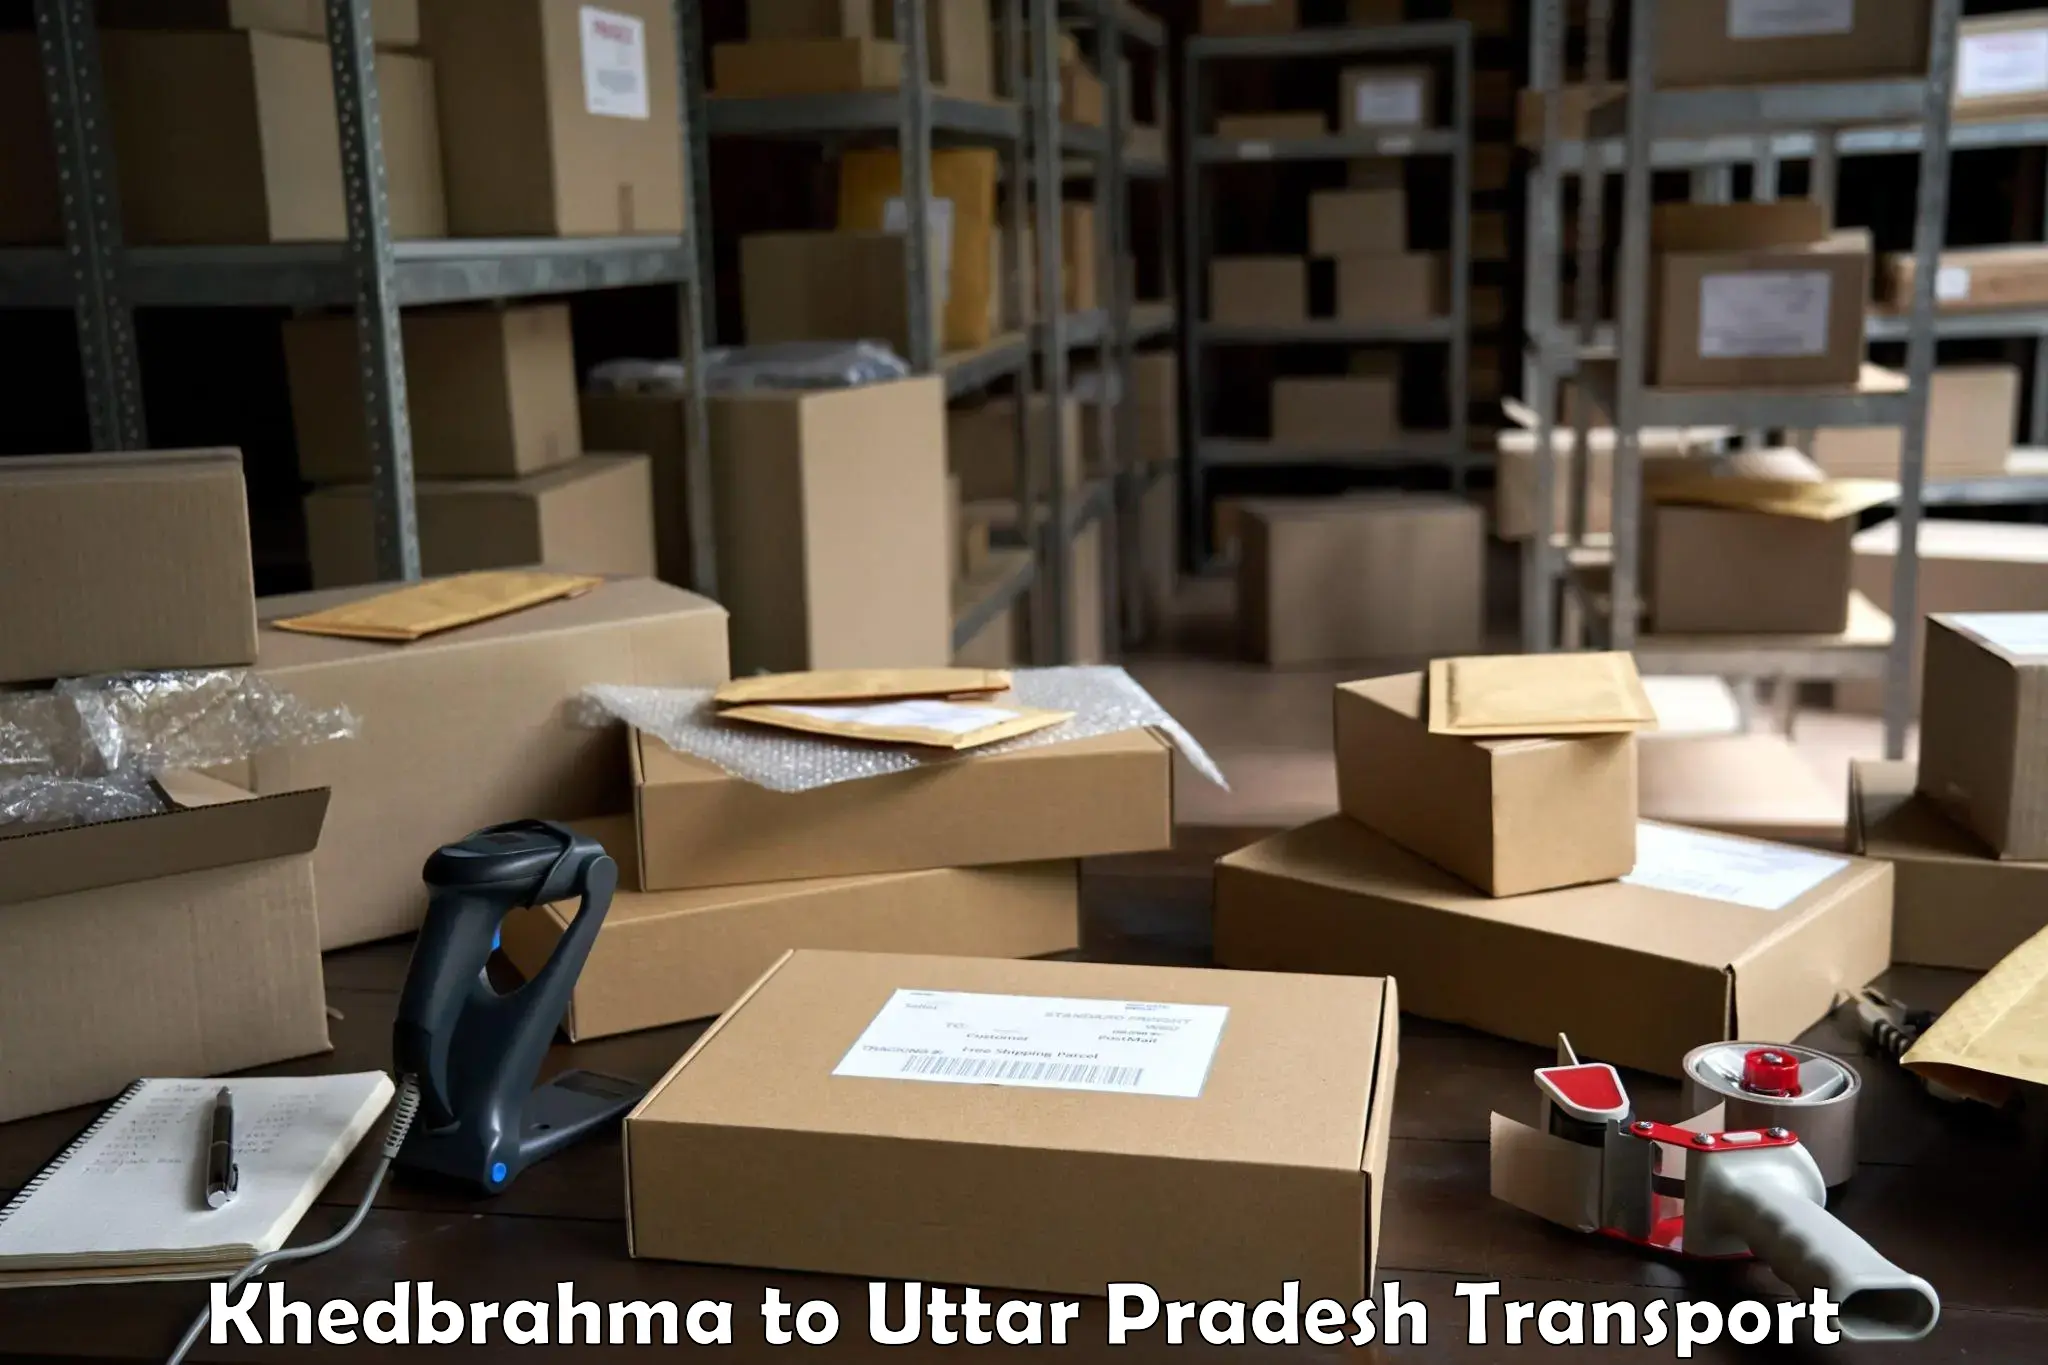 Part load transport service in India Khedbrahma to Vrindavan